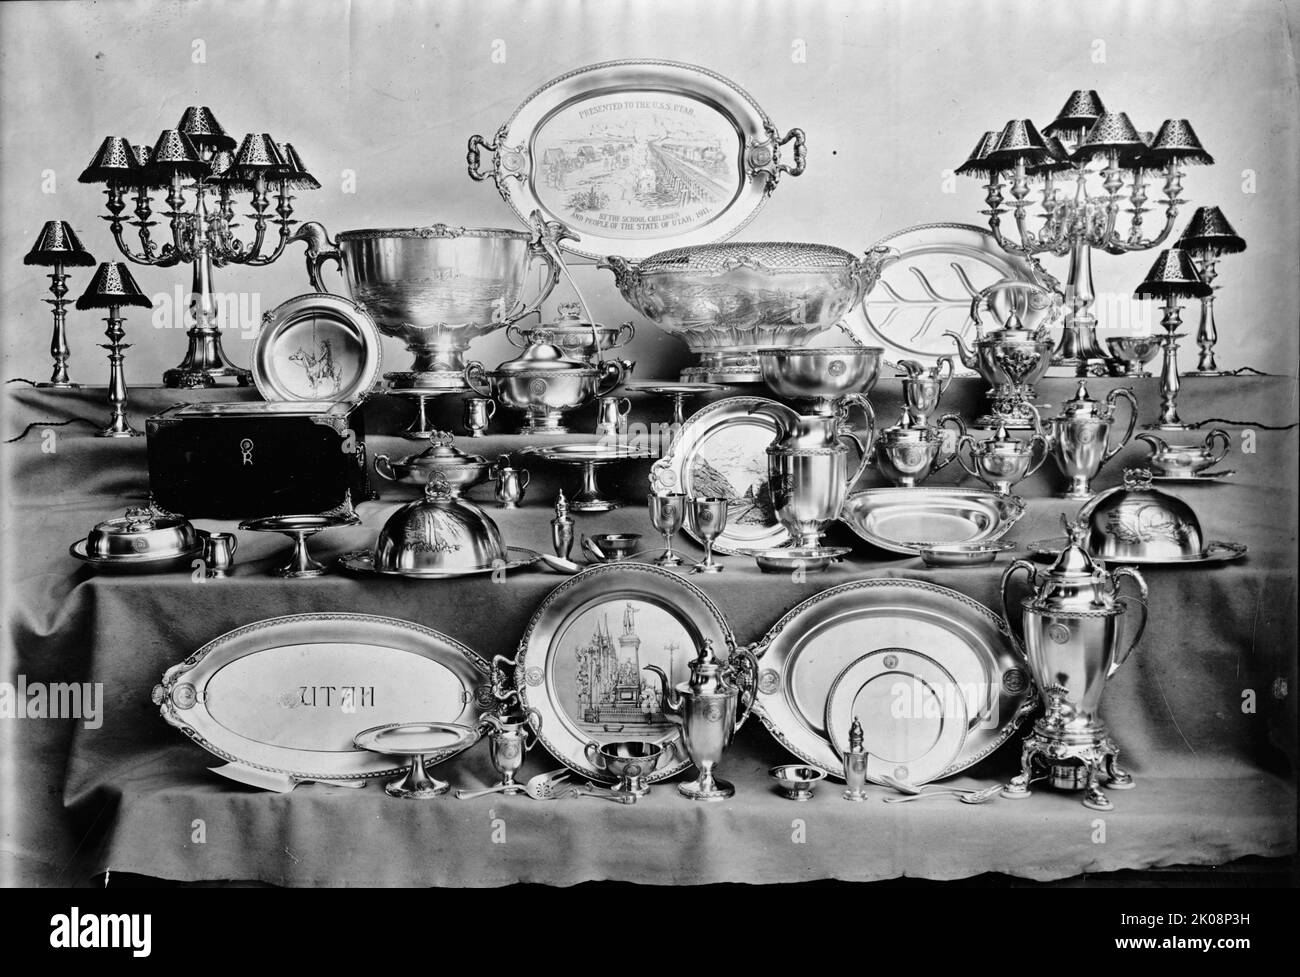 Silber gehört zu U.S.S. Utah, 1911. Silbergeschirr aus dem US-Kriegsschiff. Dekorative Kerzenleuchter, Krüge, Salben, Serviergeschirr, Heißwasserfass, Tee- und Kaffeekannen, Punchbowl und Schöpfkelle, wahrscheinlich von Gorham Manufacturing Co. Hergestellt Utah von der Schule Kinder und Menschen des Staates Utah, 1911']. Stockfoto